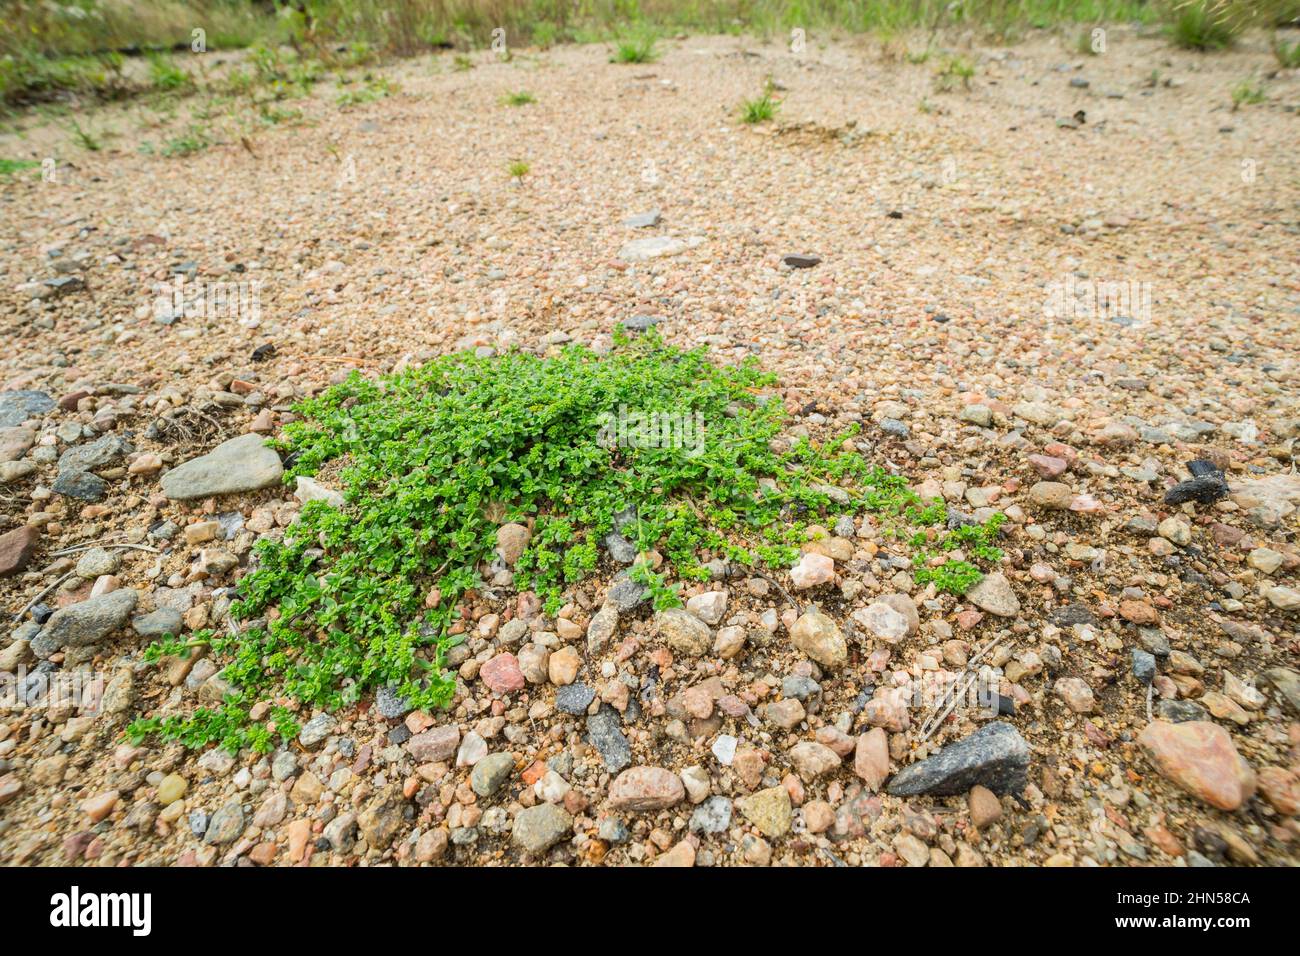 Smooth rupturewort (Herniaria glabra) growing on a sandy heathland, wild Finland Stock Photo